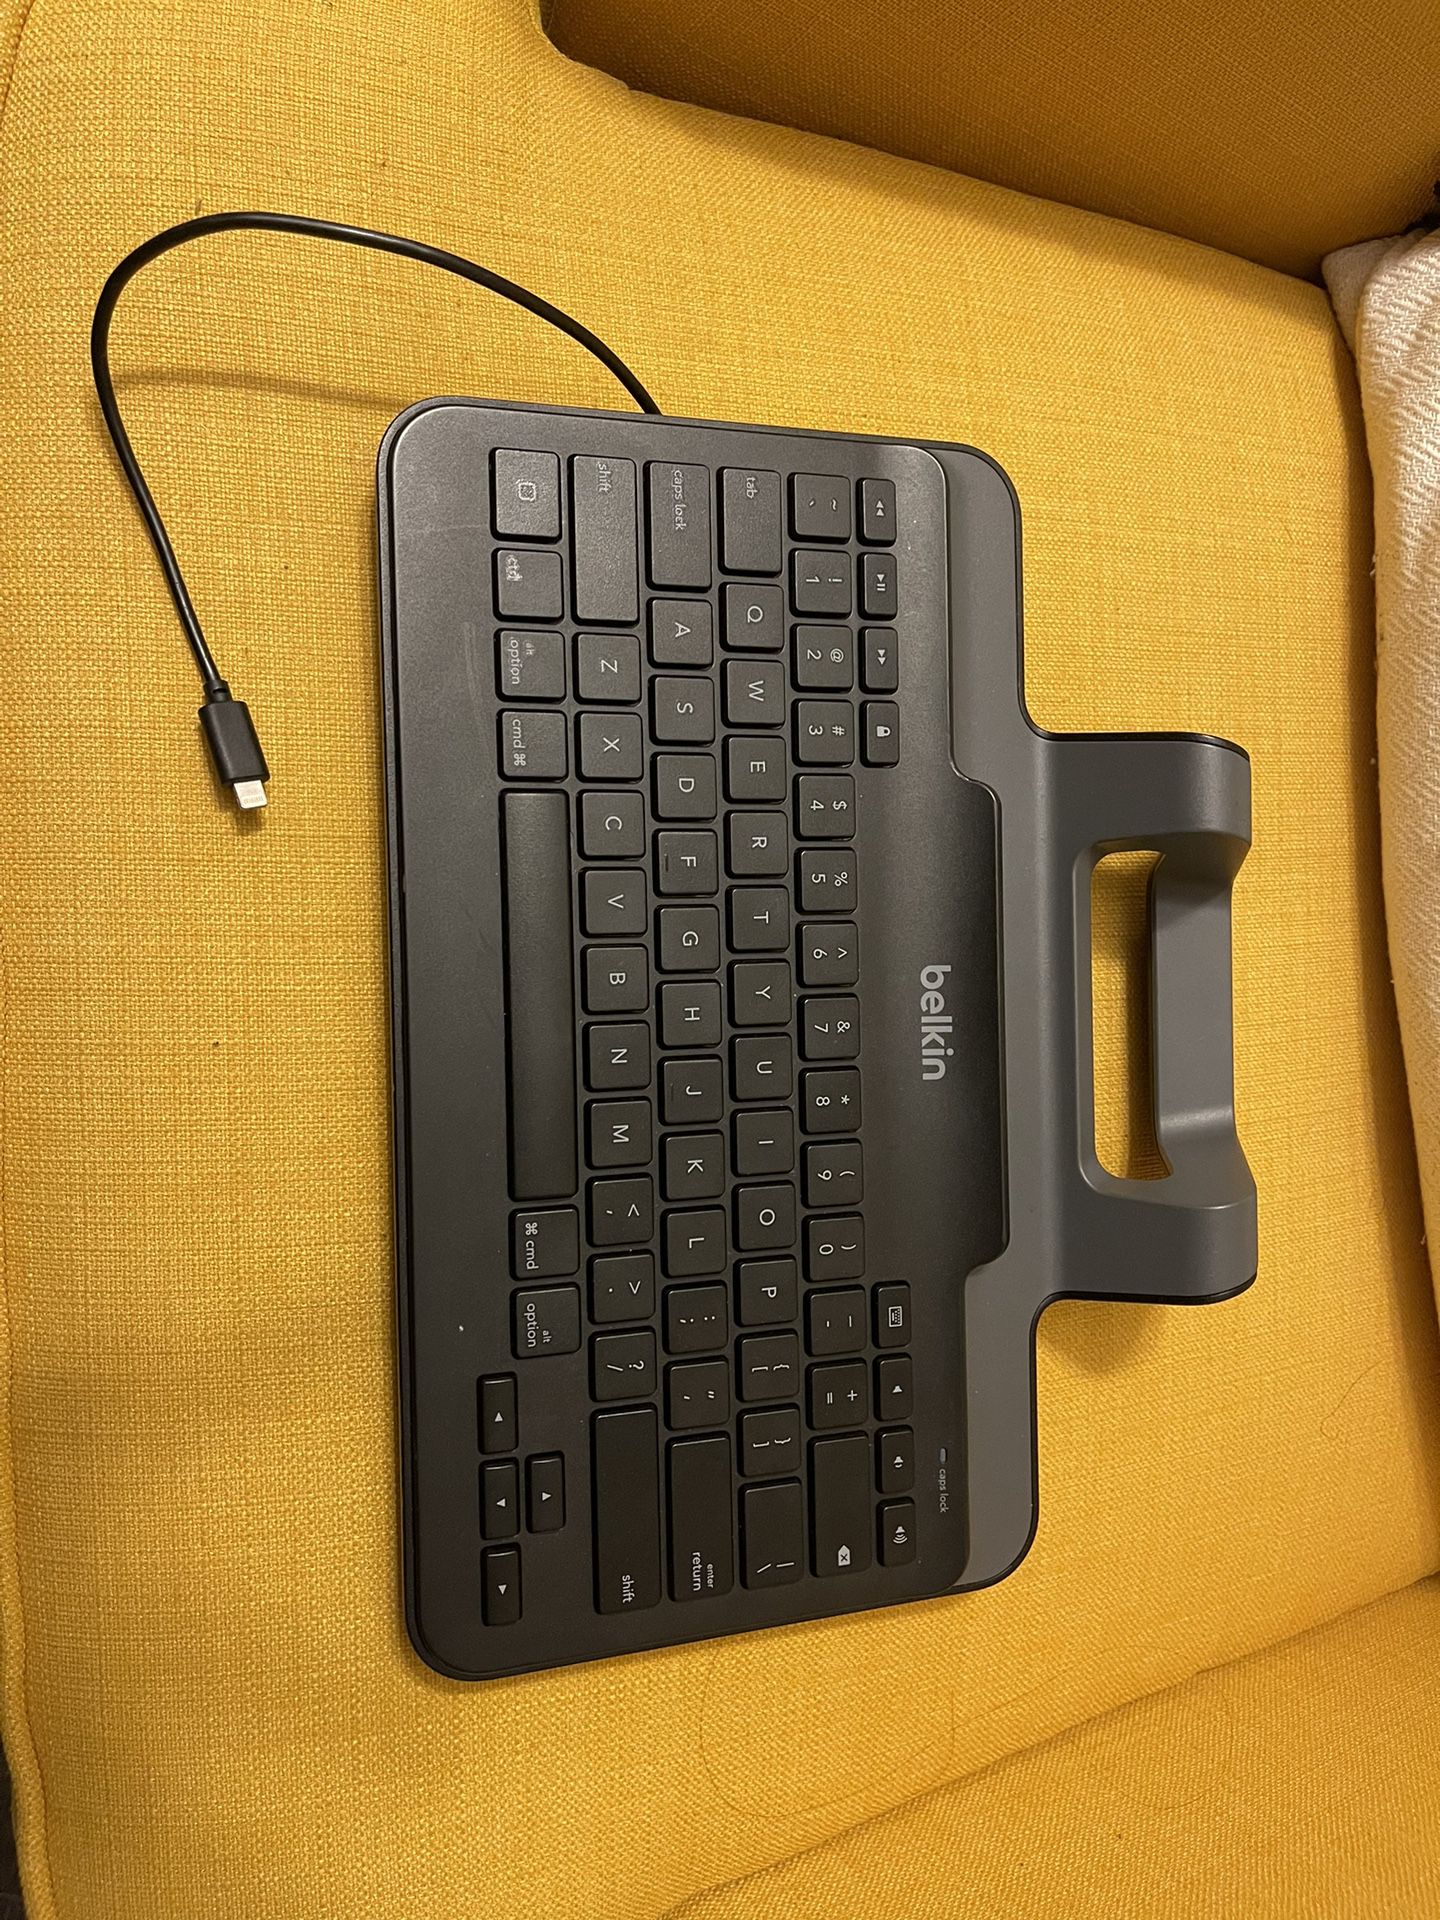 Ipad/Iphone Keyboard